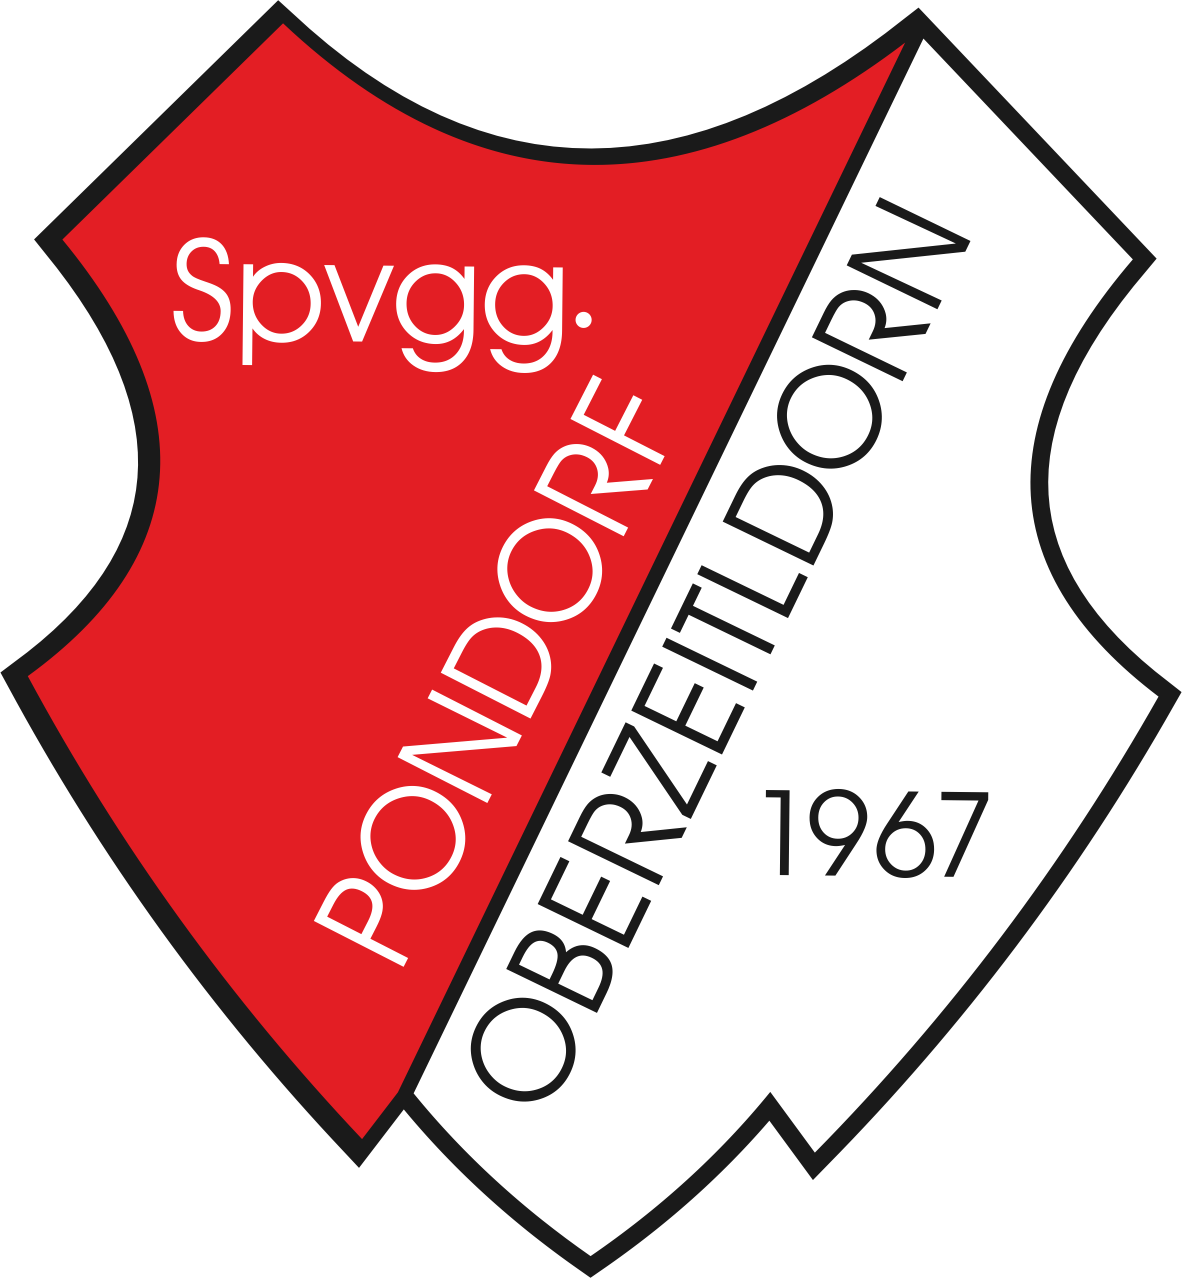 Spvgg. Pondorf-Oberzeitldorn Logo